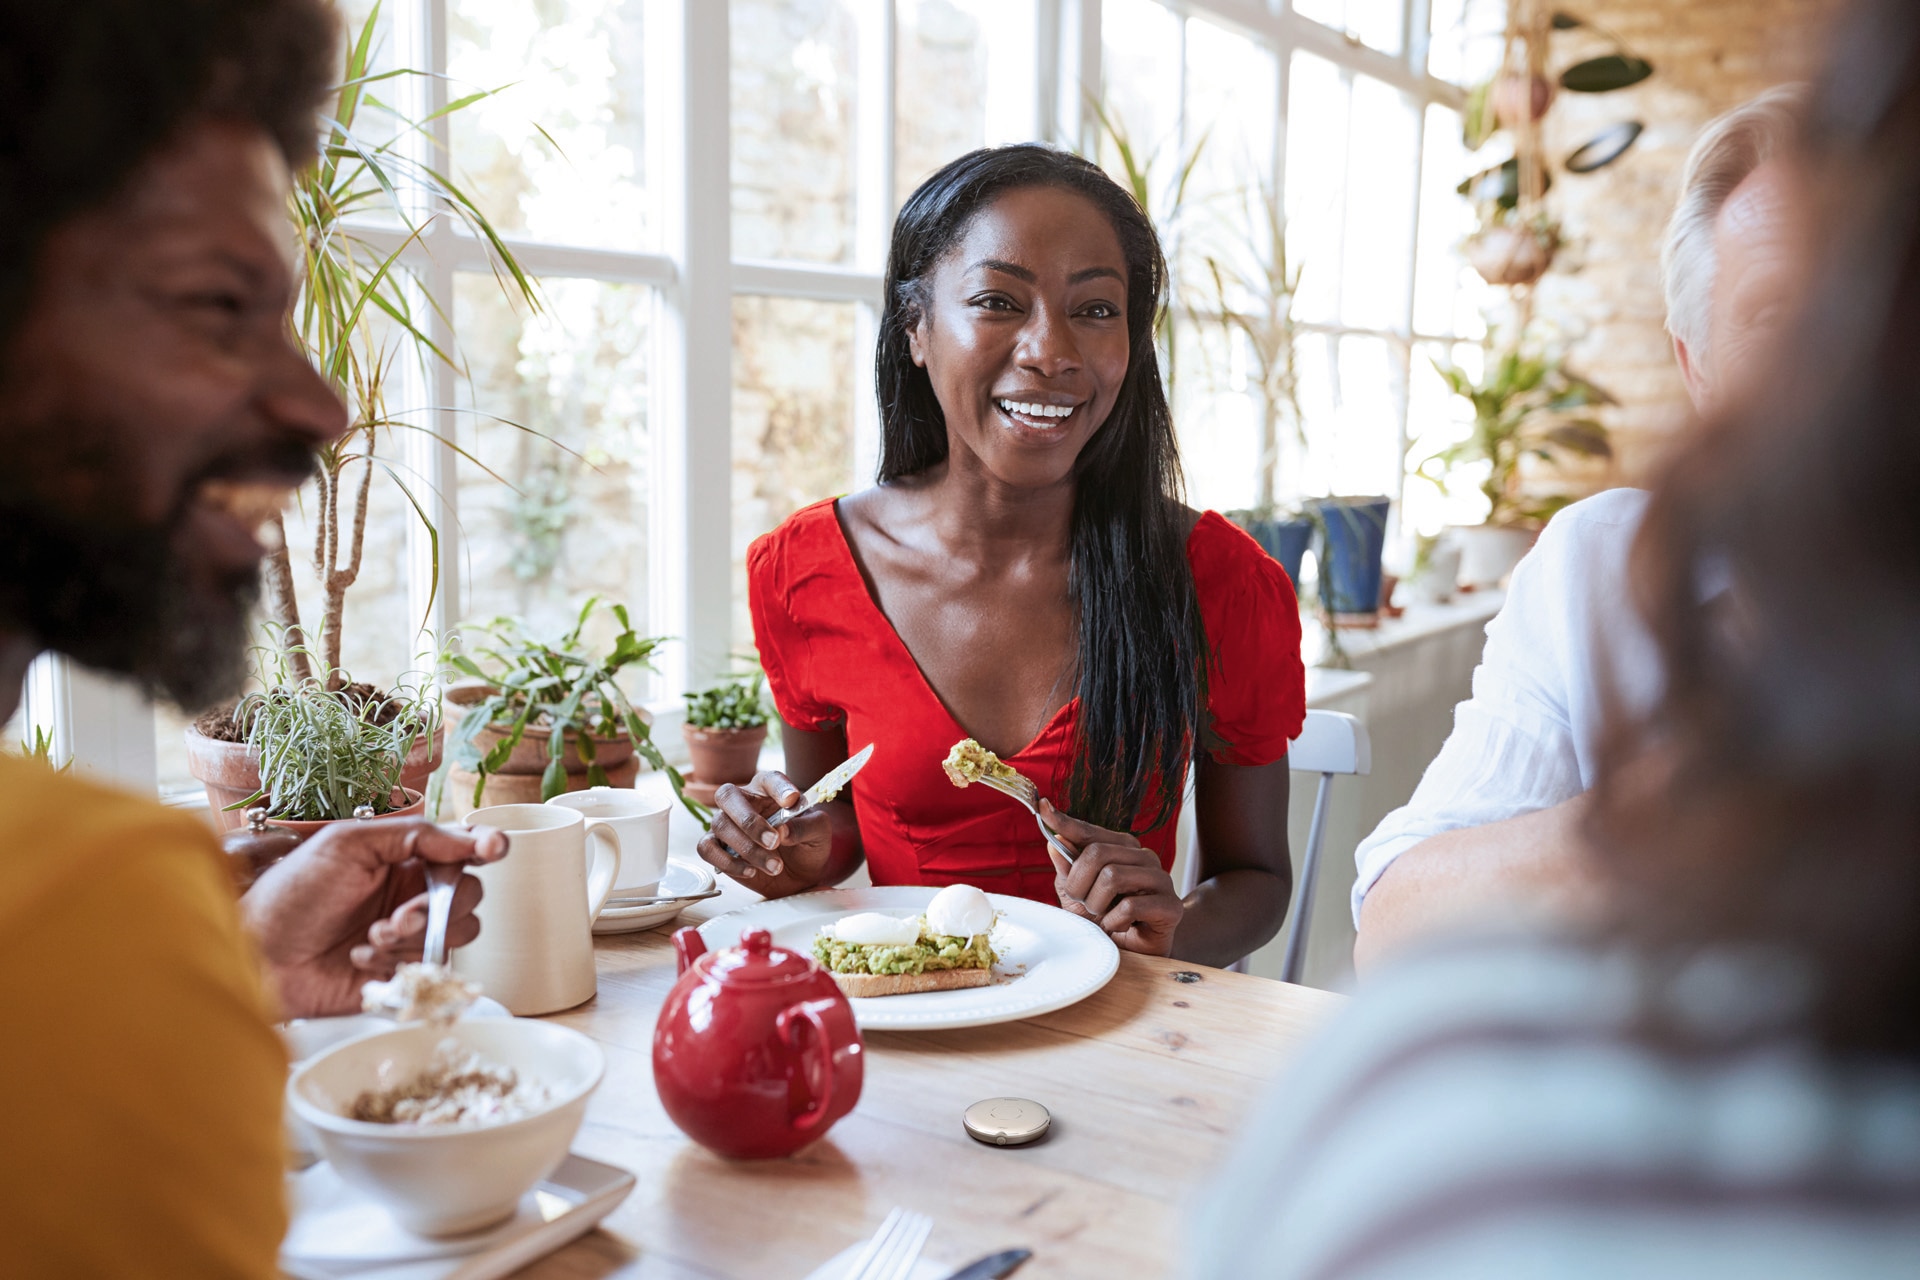 Ung, veltrent kvinne som spiser noe sunt mens hun har en hyggelig samtale med andre rundt et bord. Roger Select foran henne.